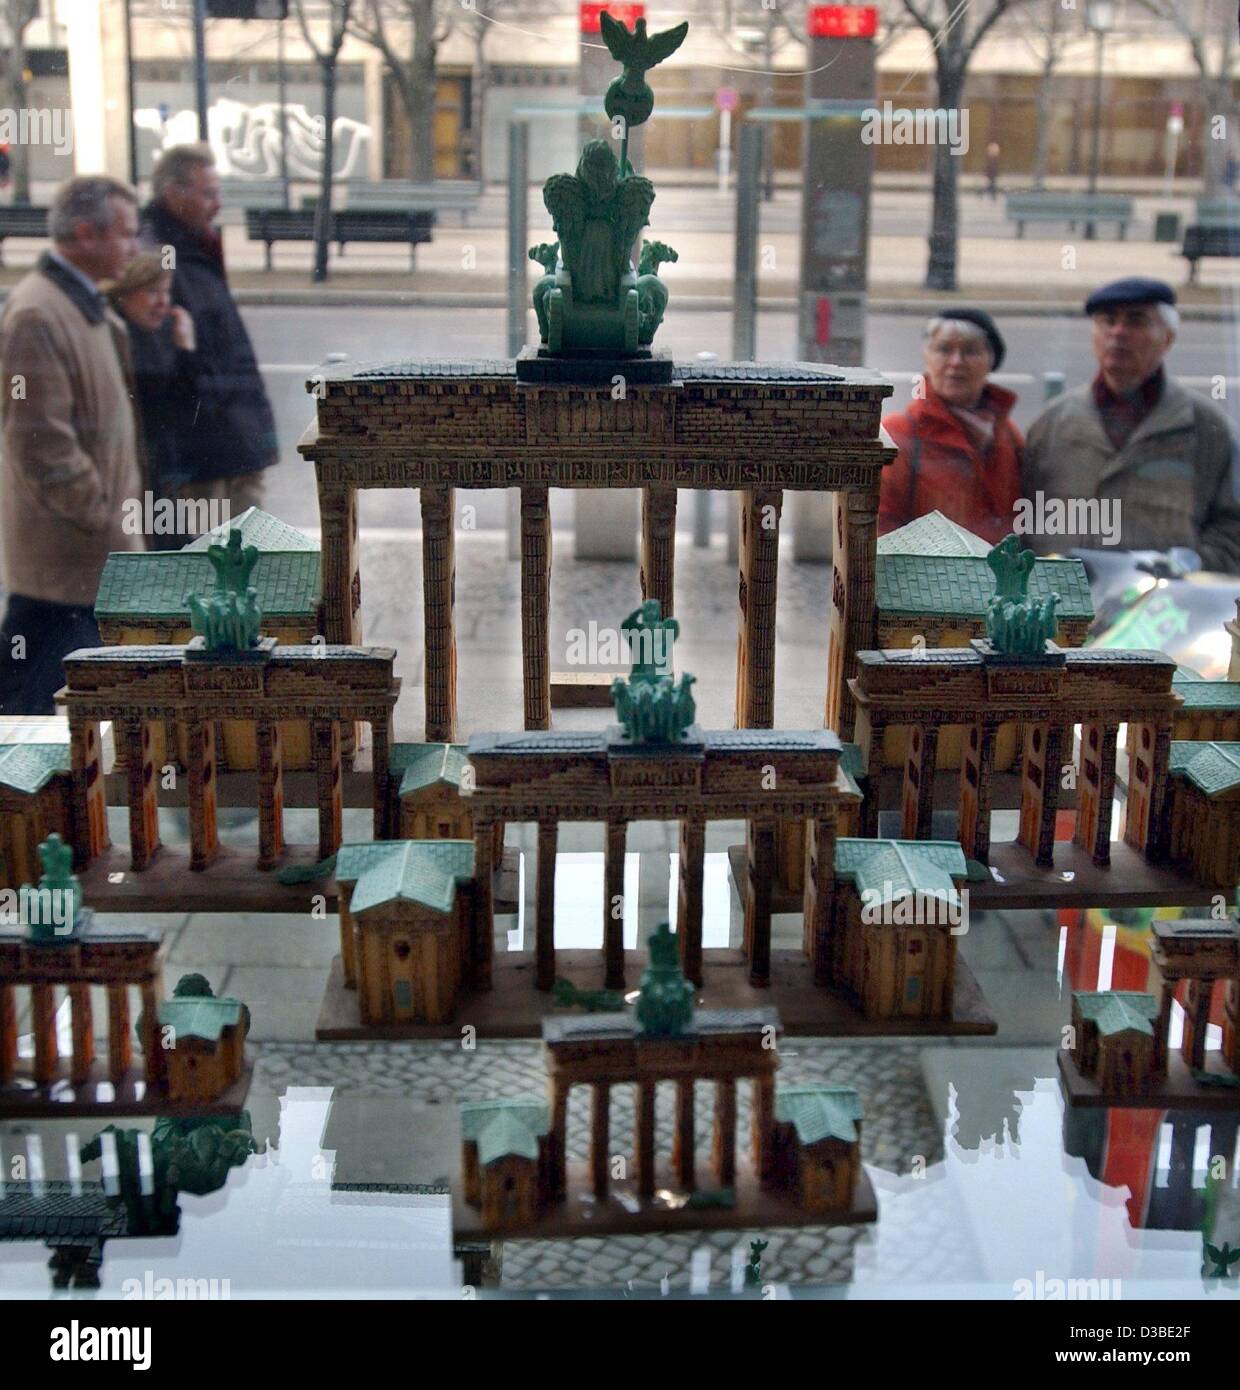 (Dpa) - i passanti da guardare a miniature della Porta di Brandeburgo esposti nel negozio del Bundestag tedesco sulla via dello shopping "Unter den Linden" (sotto i tigli), Berlino, 21 gennaio 2003. Il negozio di vendita di souvenir del Bundestag e di Berlino per i turisti. Foto Stock